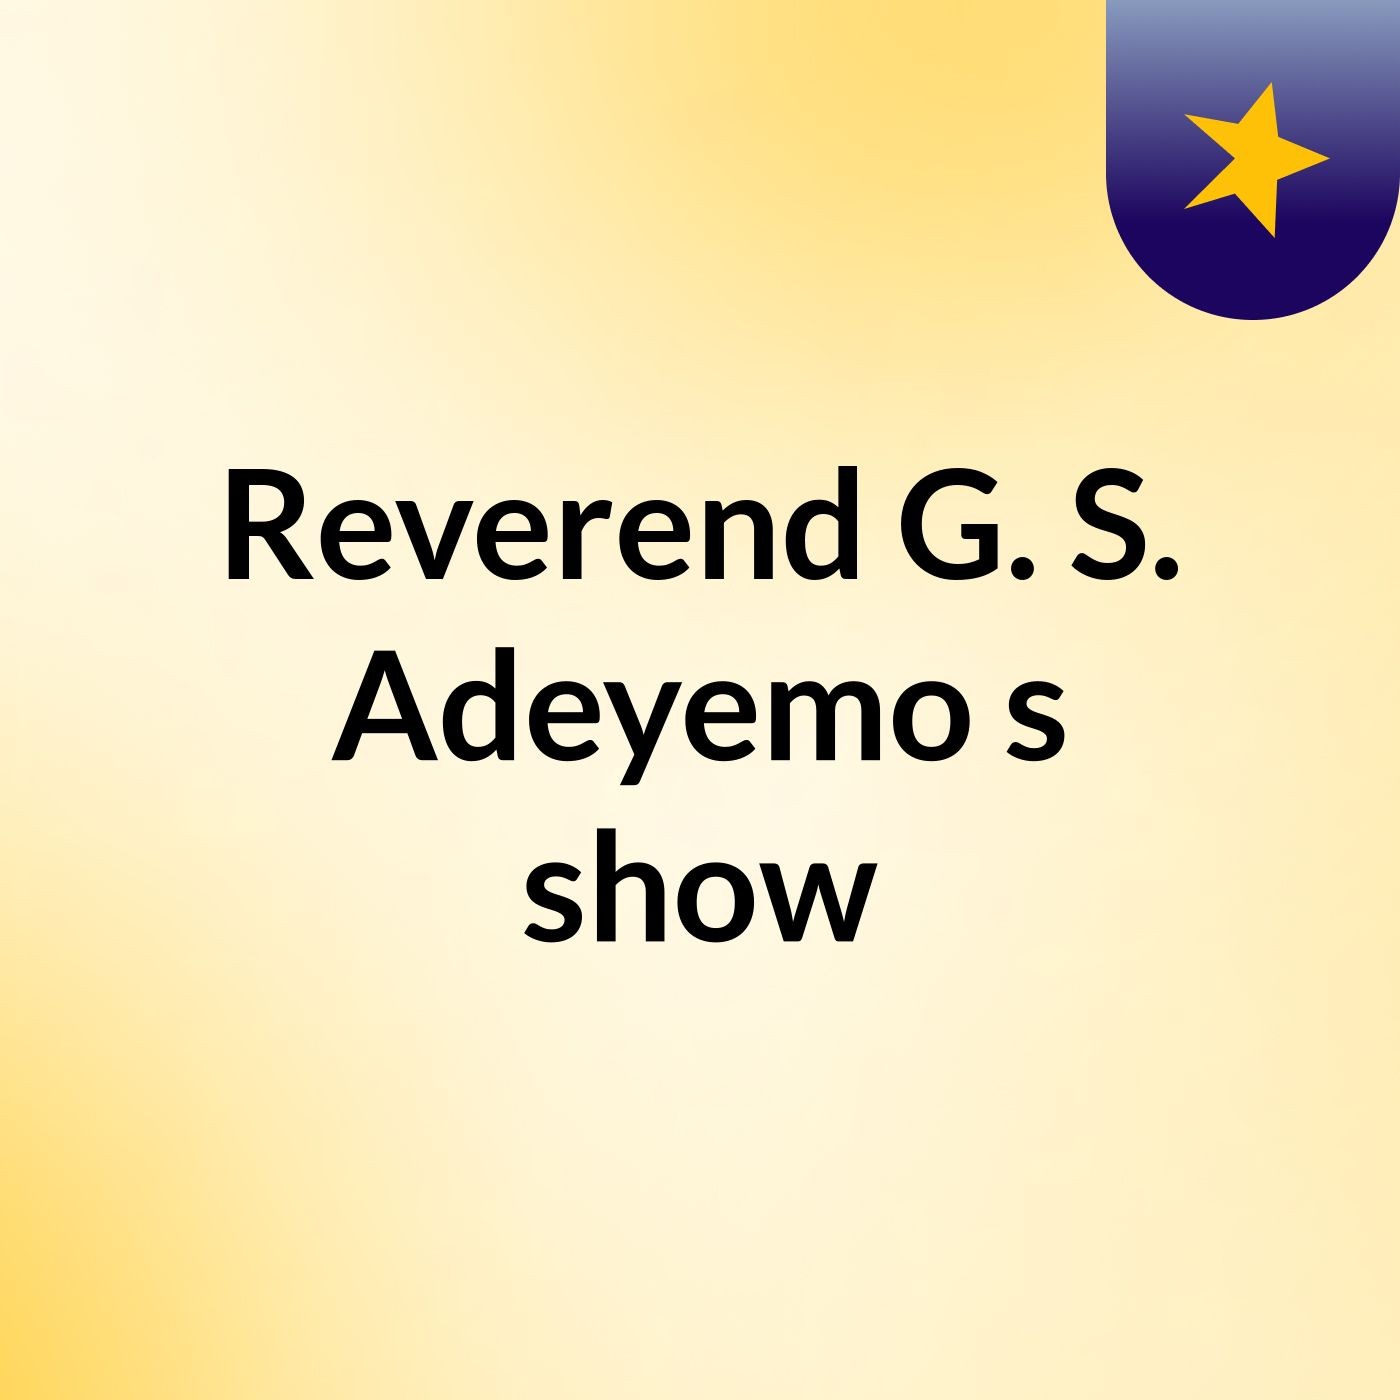 Episode 3 - Reverend G. S. Adeyemo's show